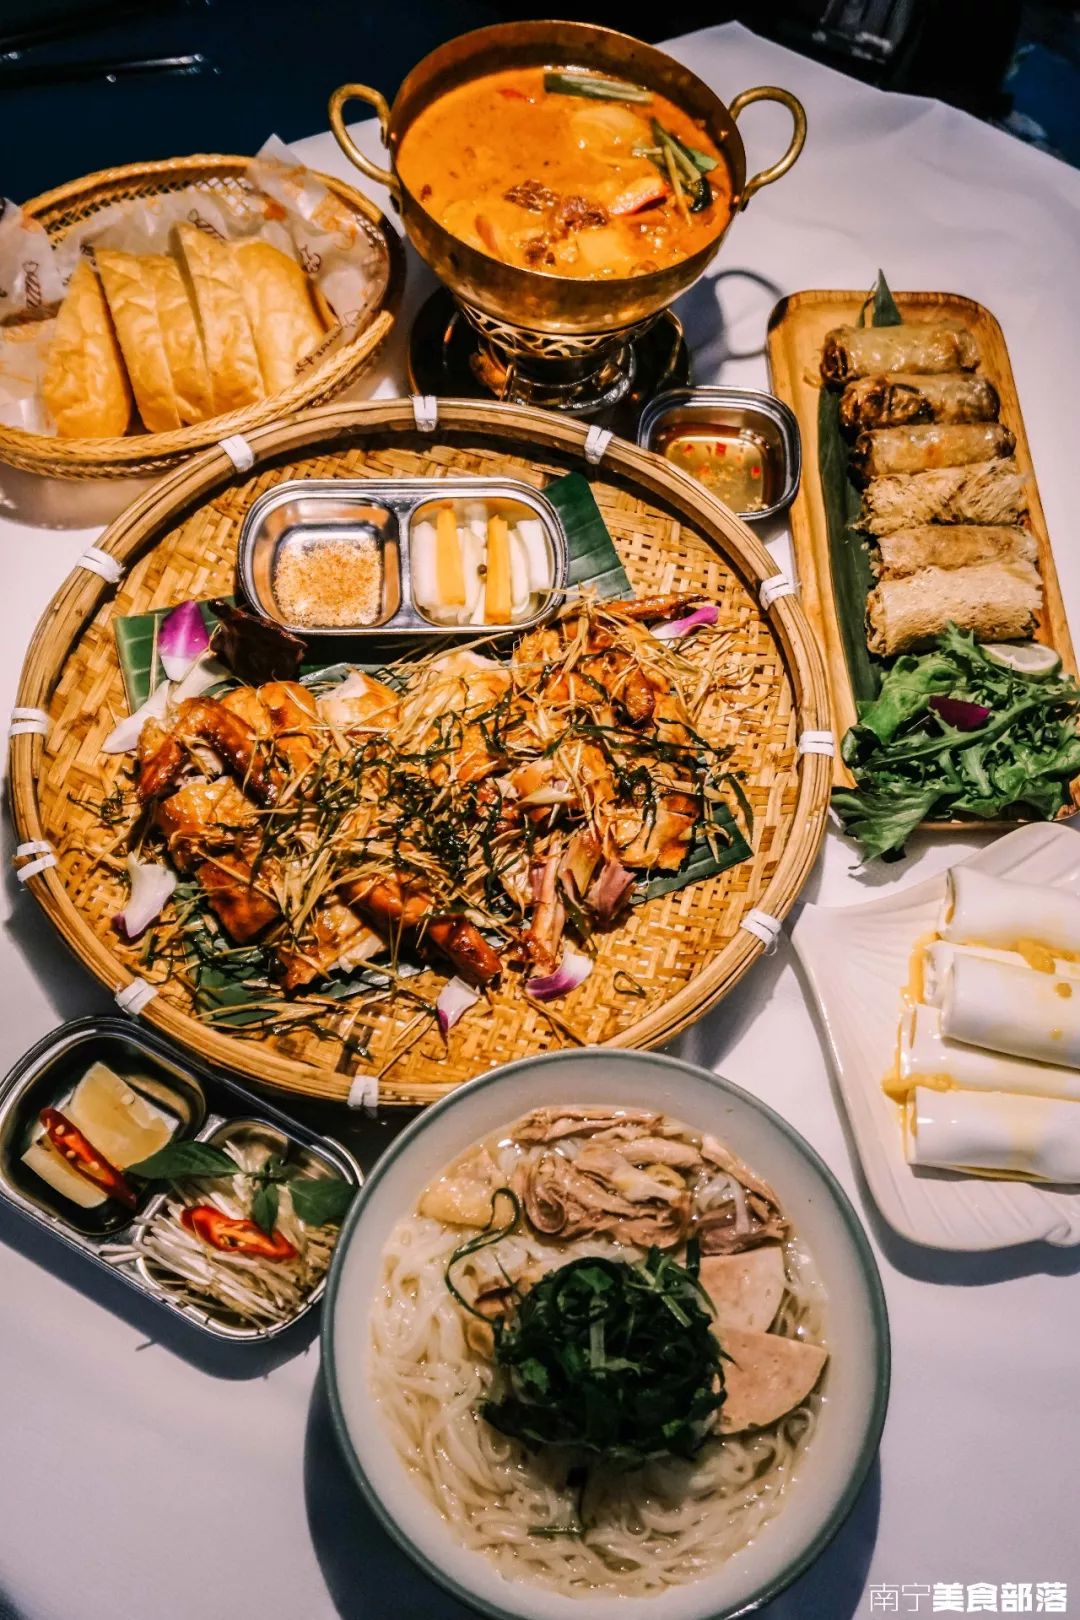 花样西贡 | 万象城里最正宗法式越南菜,繁花深处的异国风情